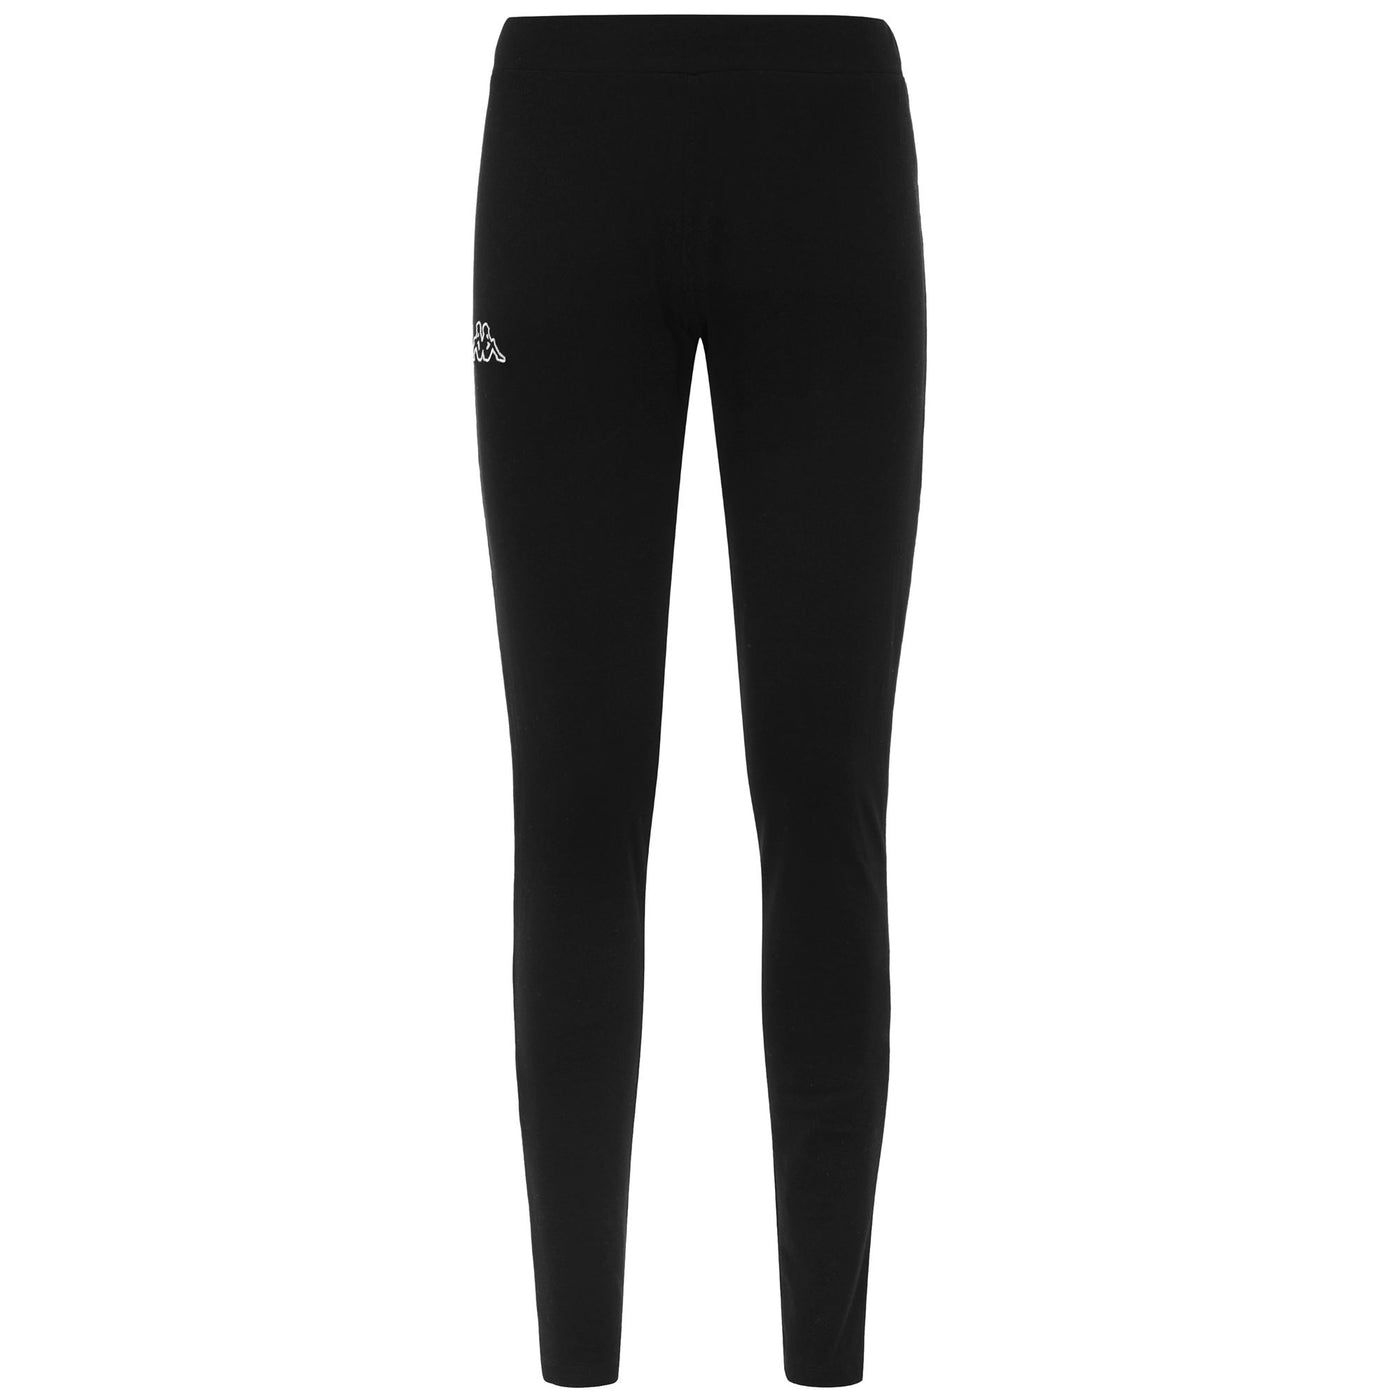 Pants Woman LOGO ZAPRI SKIN Sport Trousers Black | kappa Photo (jpg Rgb)			